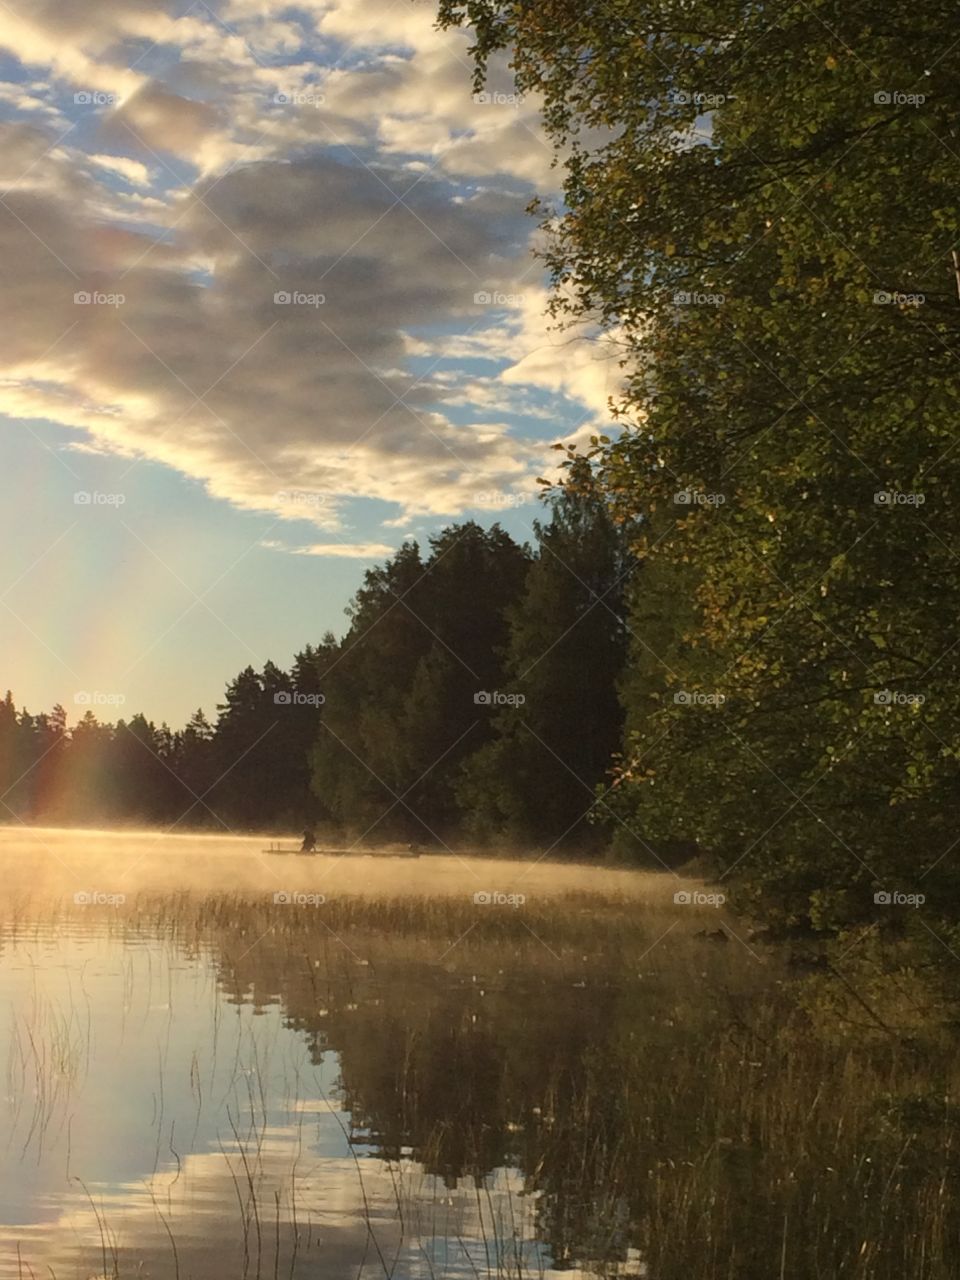 Långsjön in Sweden